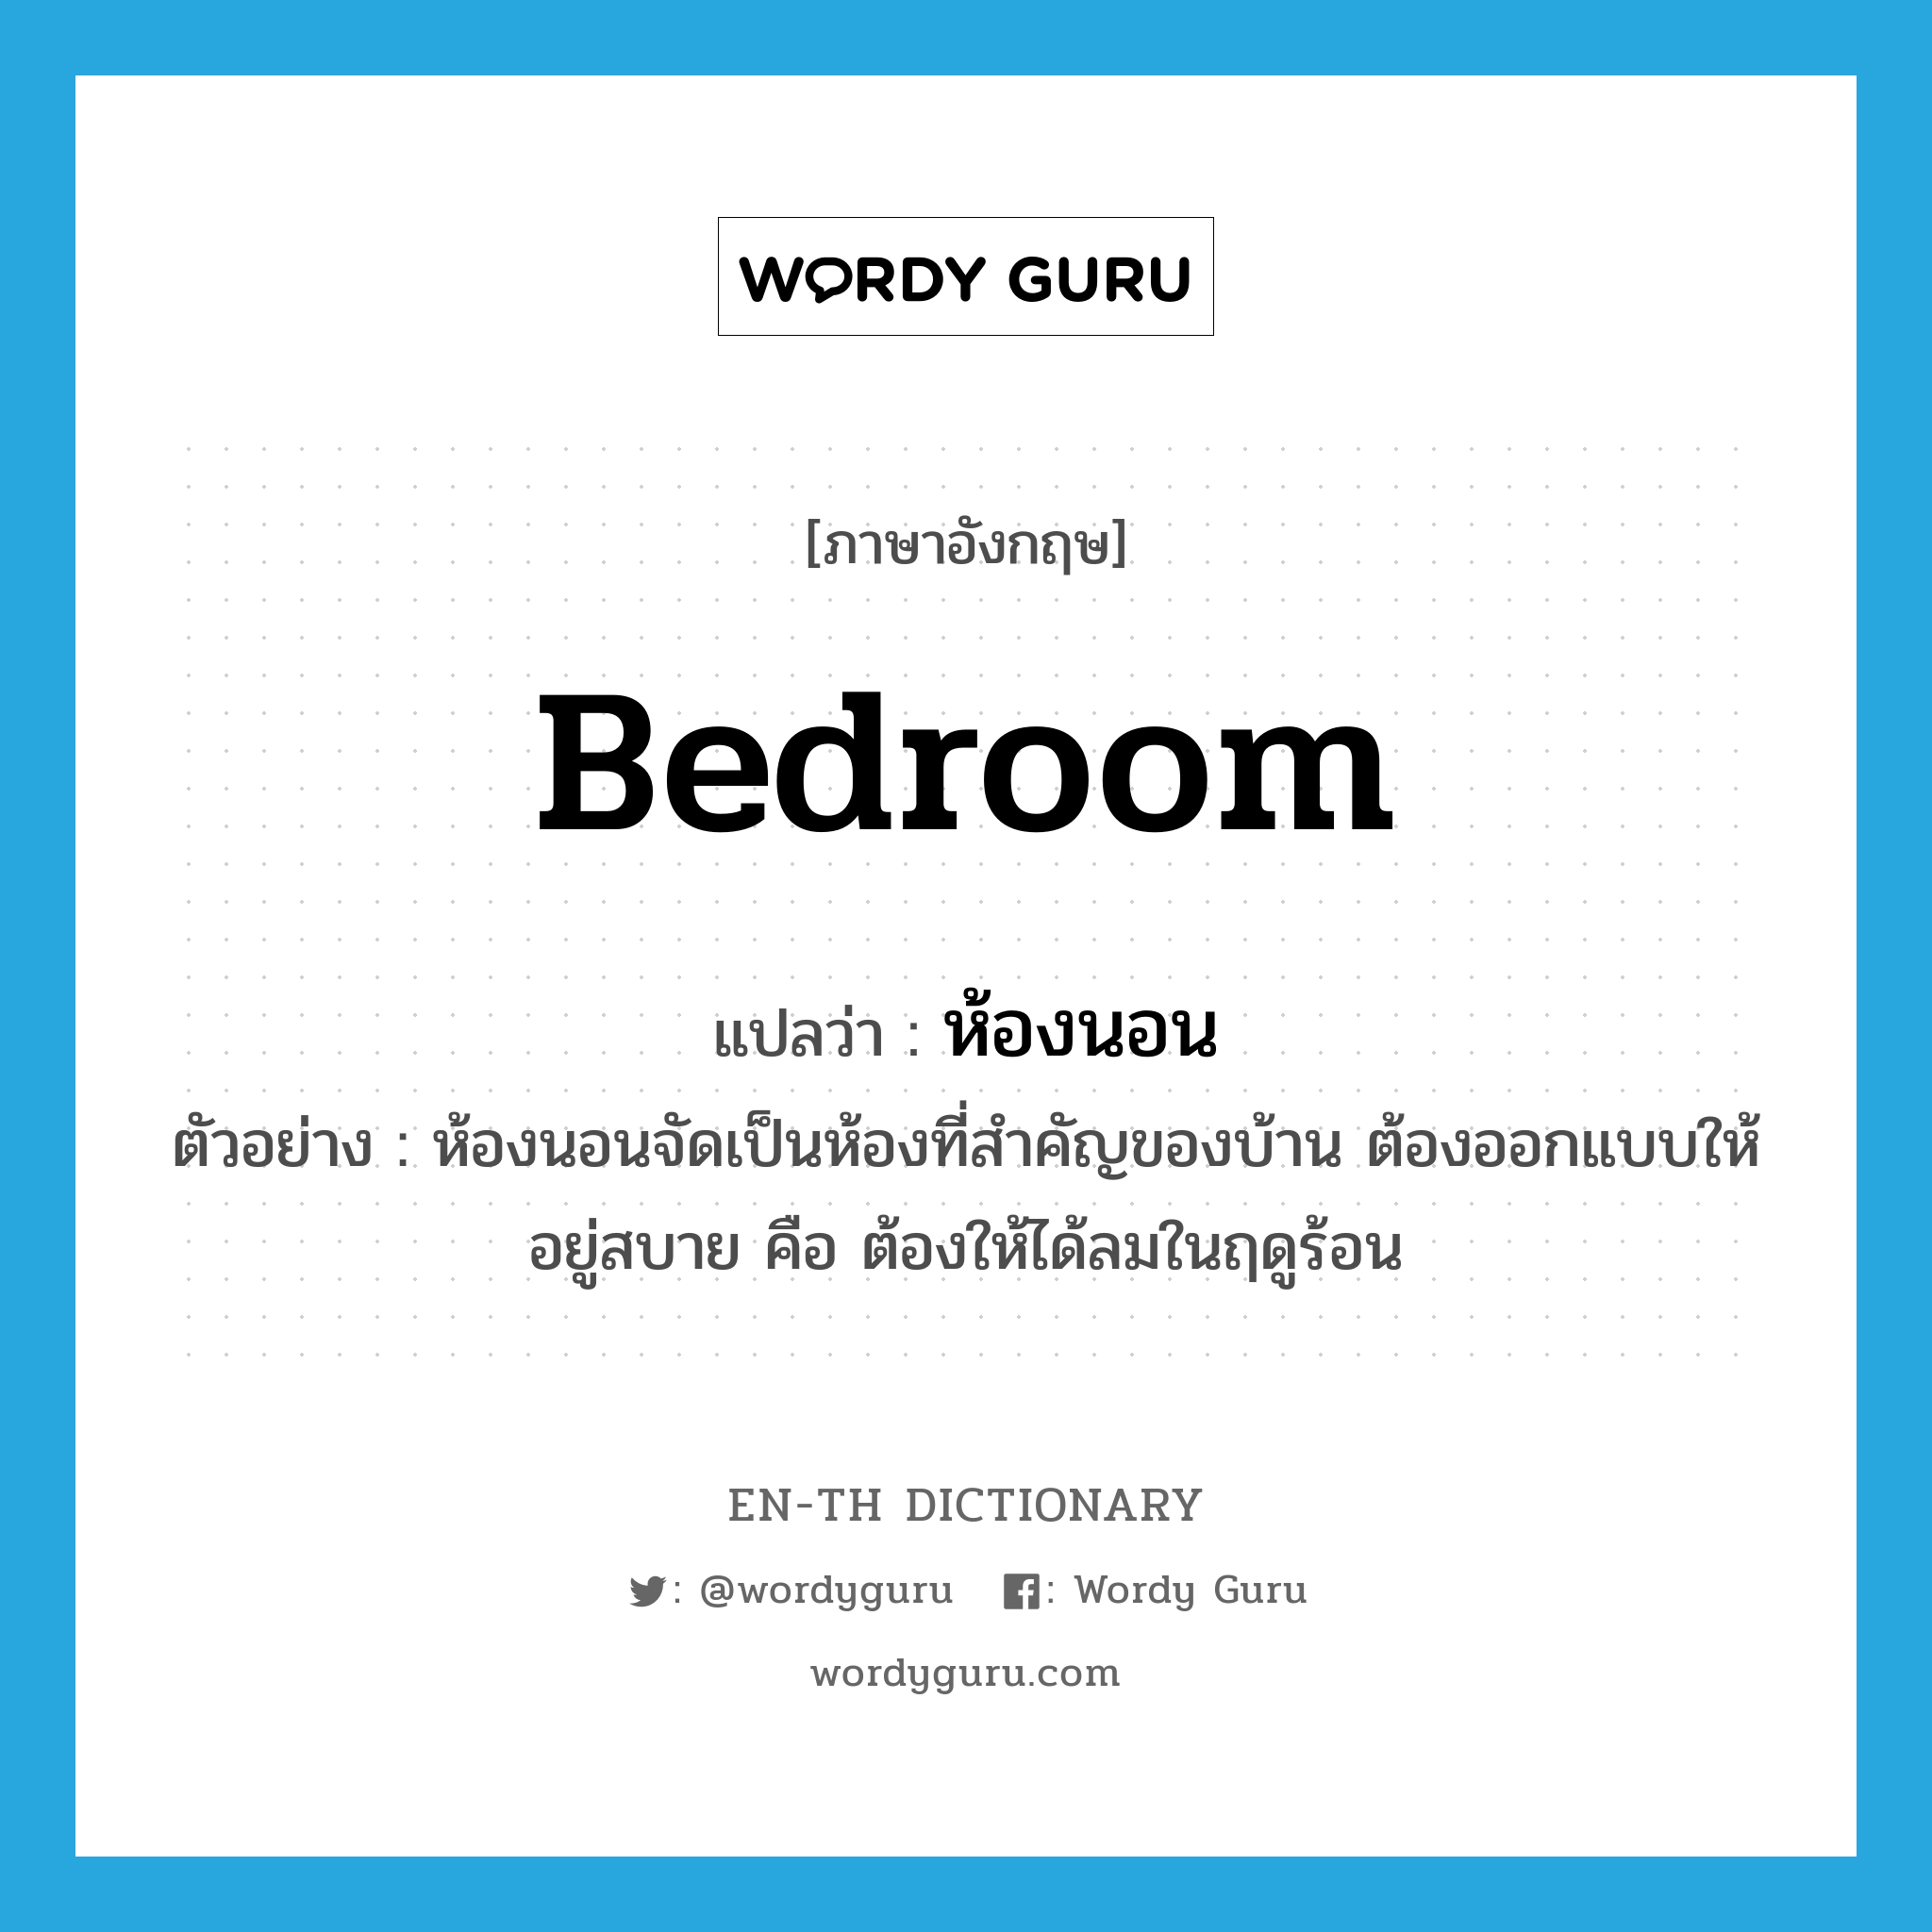 ห้องนอน ภาษาอังกฤษ?, คำศัพท์ภาษาอังกฤษ ห้องนอน แปลว่า bedroom ประเภท N ตัวอย่าง ห้องนอนจัดเป็นห้องที่สำคัญของบ้าน ต้องออกแบบให้อยู่สบาย คือ ต้องให้ได้ลมในฤดูร้อน หมวด N